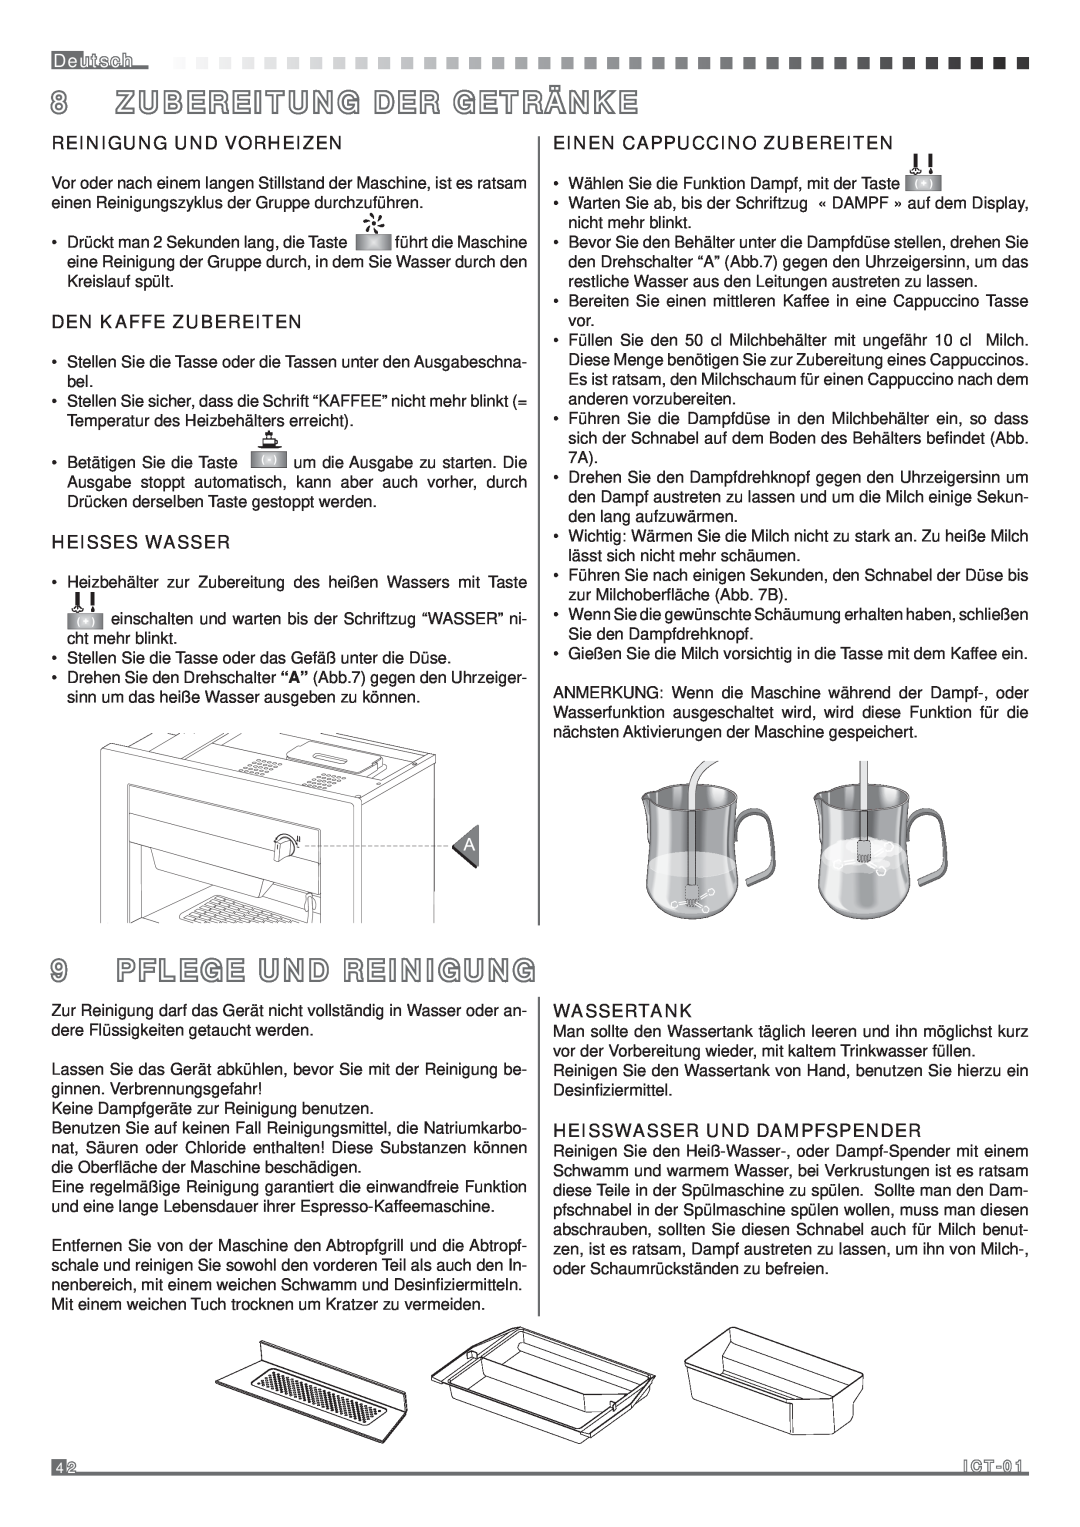 Fagor America MQC-A10 US manual Deutsch, Reinigung Und Vorheizen, Den Kaffe Zubereiten, Heisses Wasser, Wassertank 